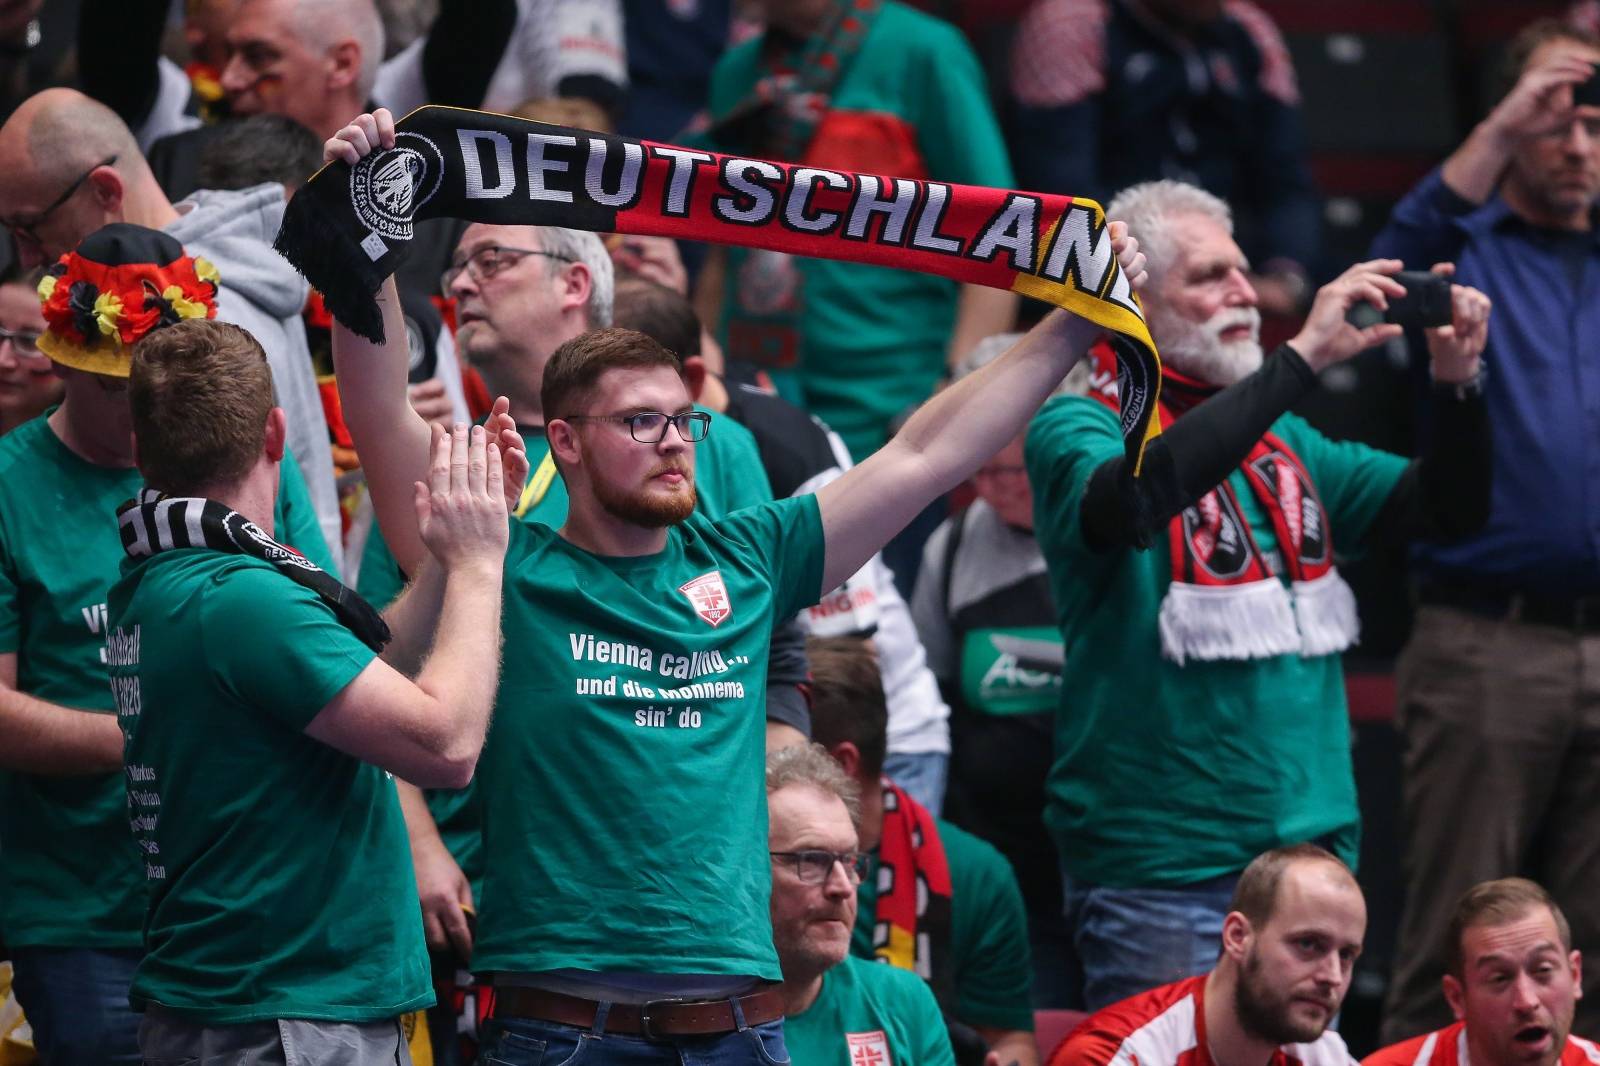 Beč: Bjelorusija i Njemačka susreli se u drugom krugu Europskog prvenstva u rukometu